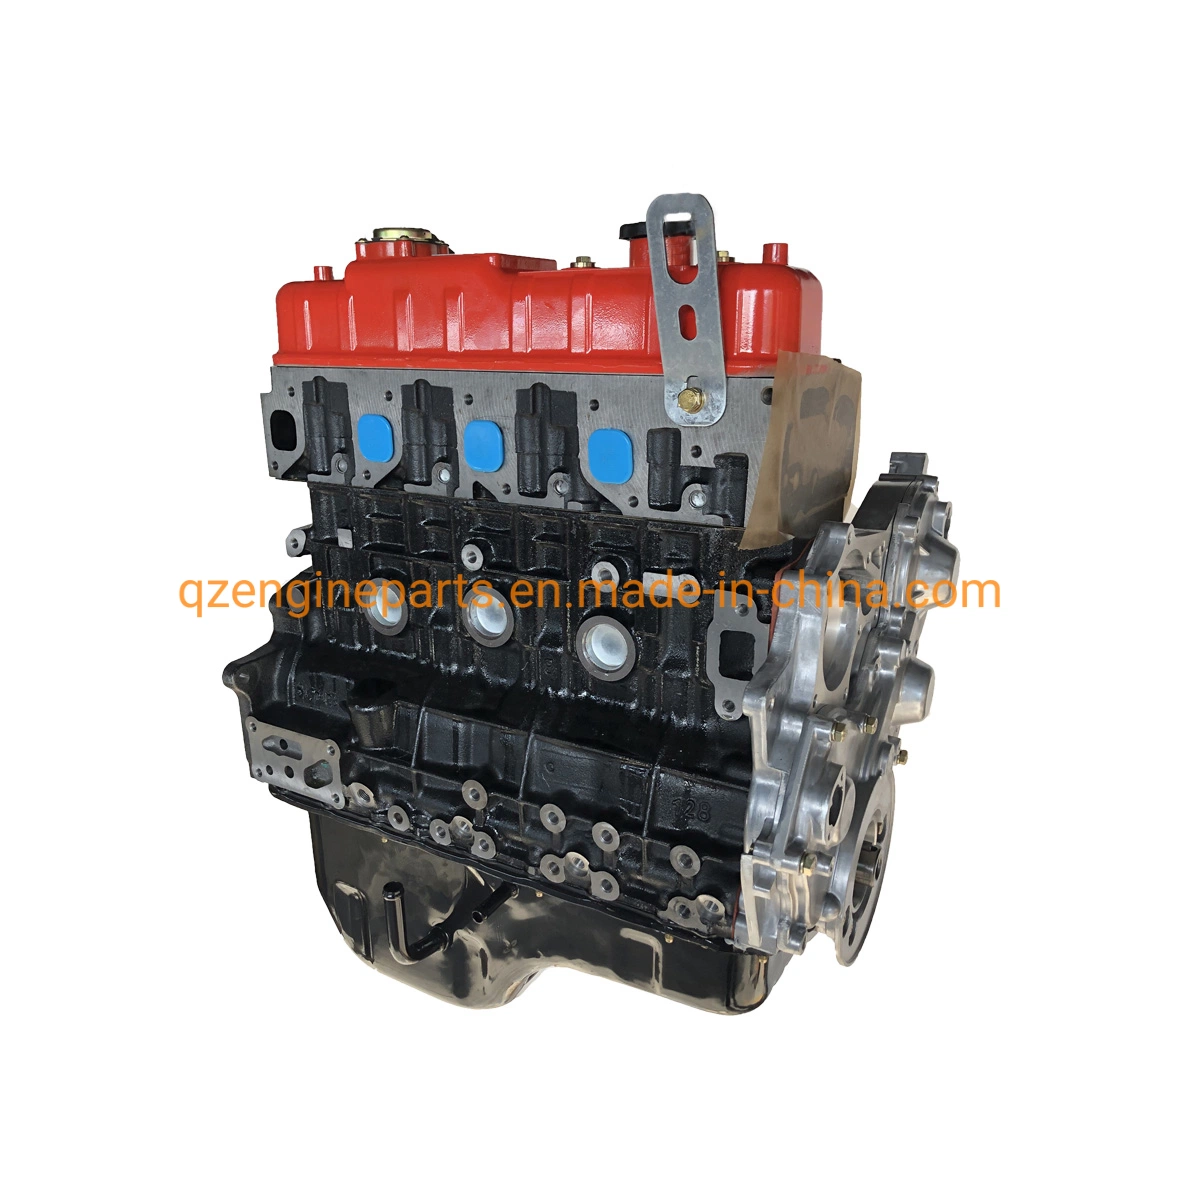 Carretilla piezas de repuesto para Motores Diesel Mayorista/Proveedor BJ493zlq4 en el motor de bloque largo Camioneta Foton motor